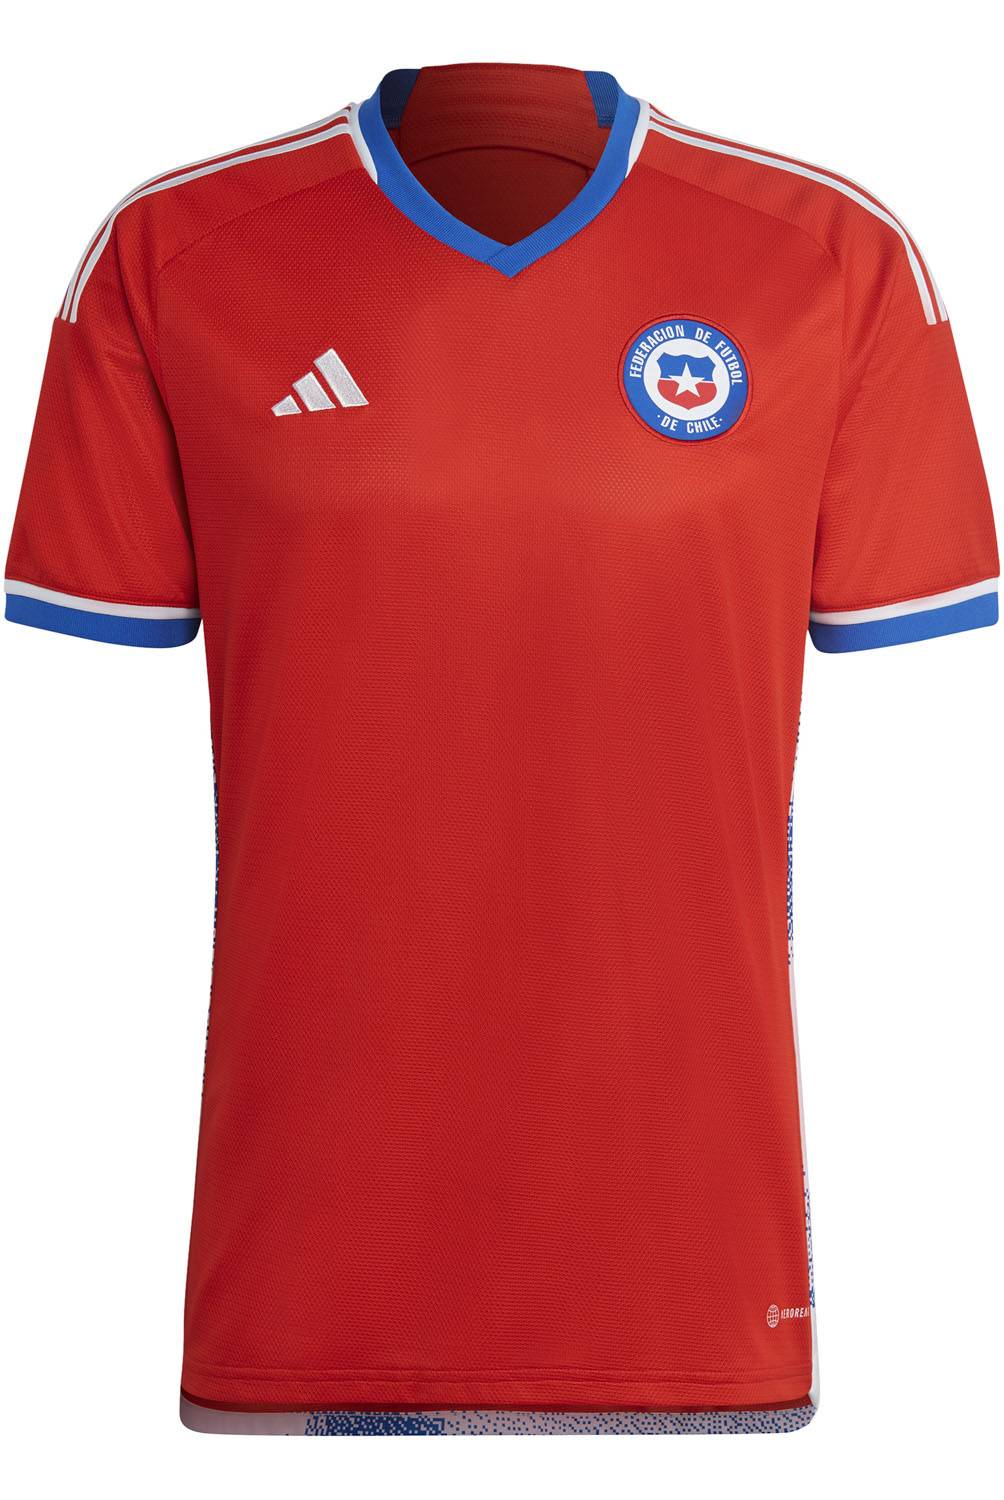 ADIDAS - Camiseta De Fútbol Selección Chilena Niño Adidas